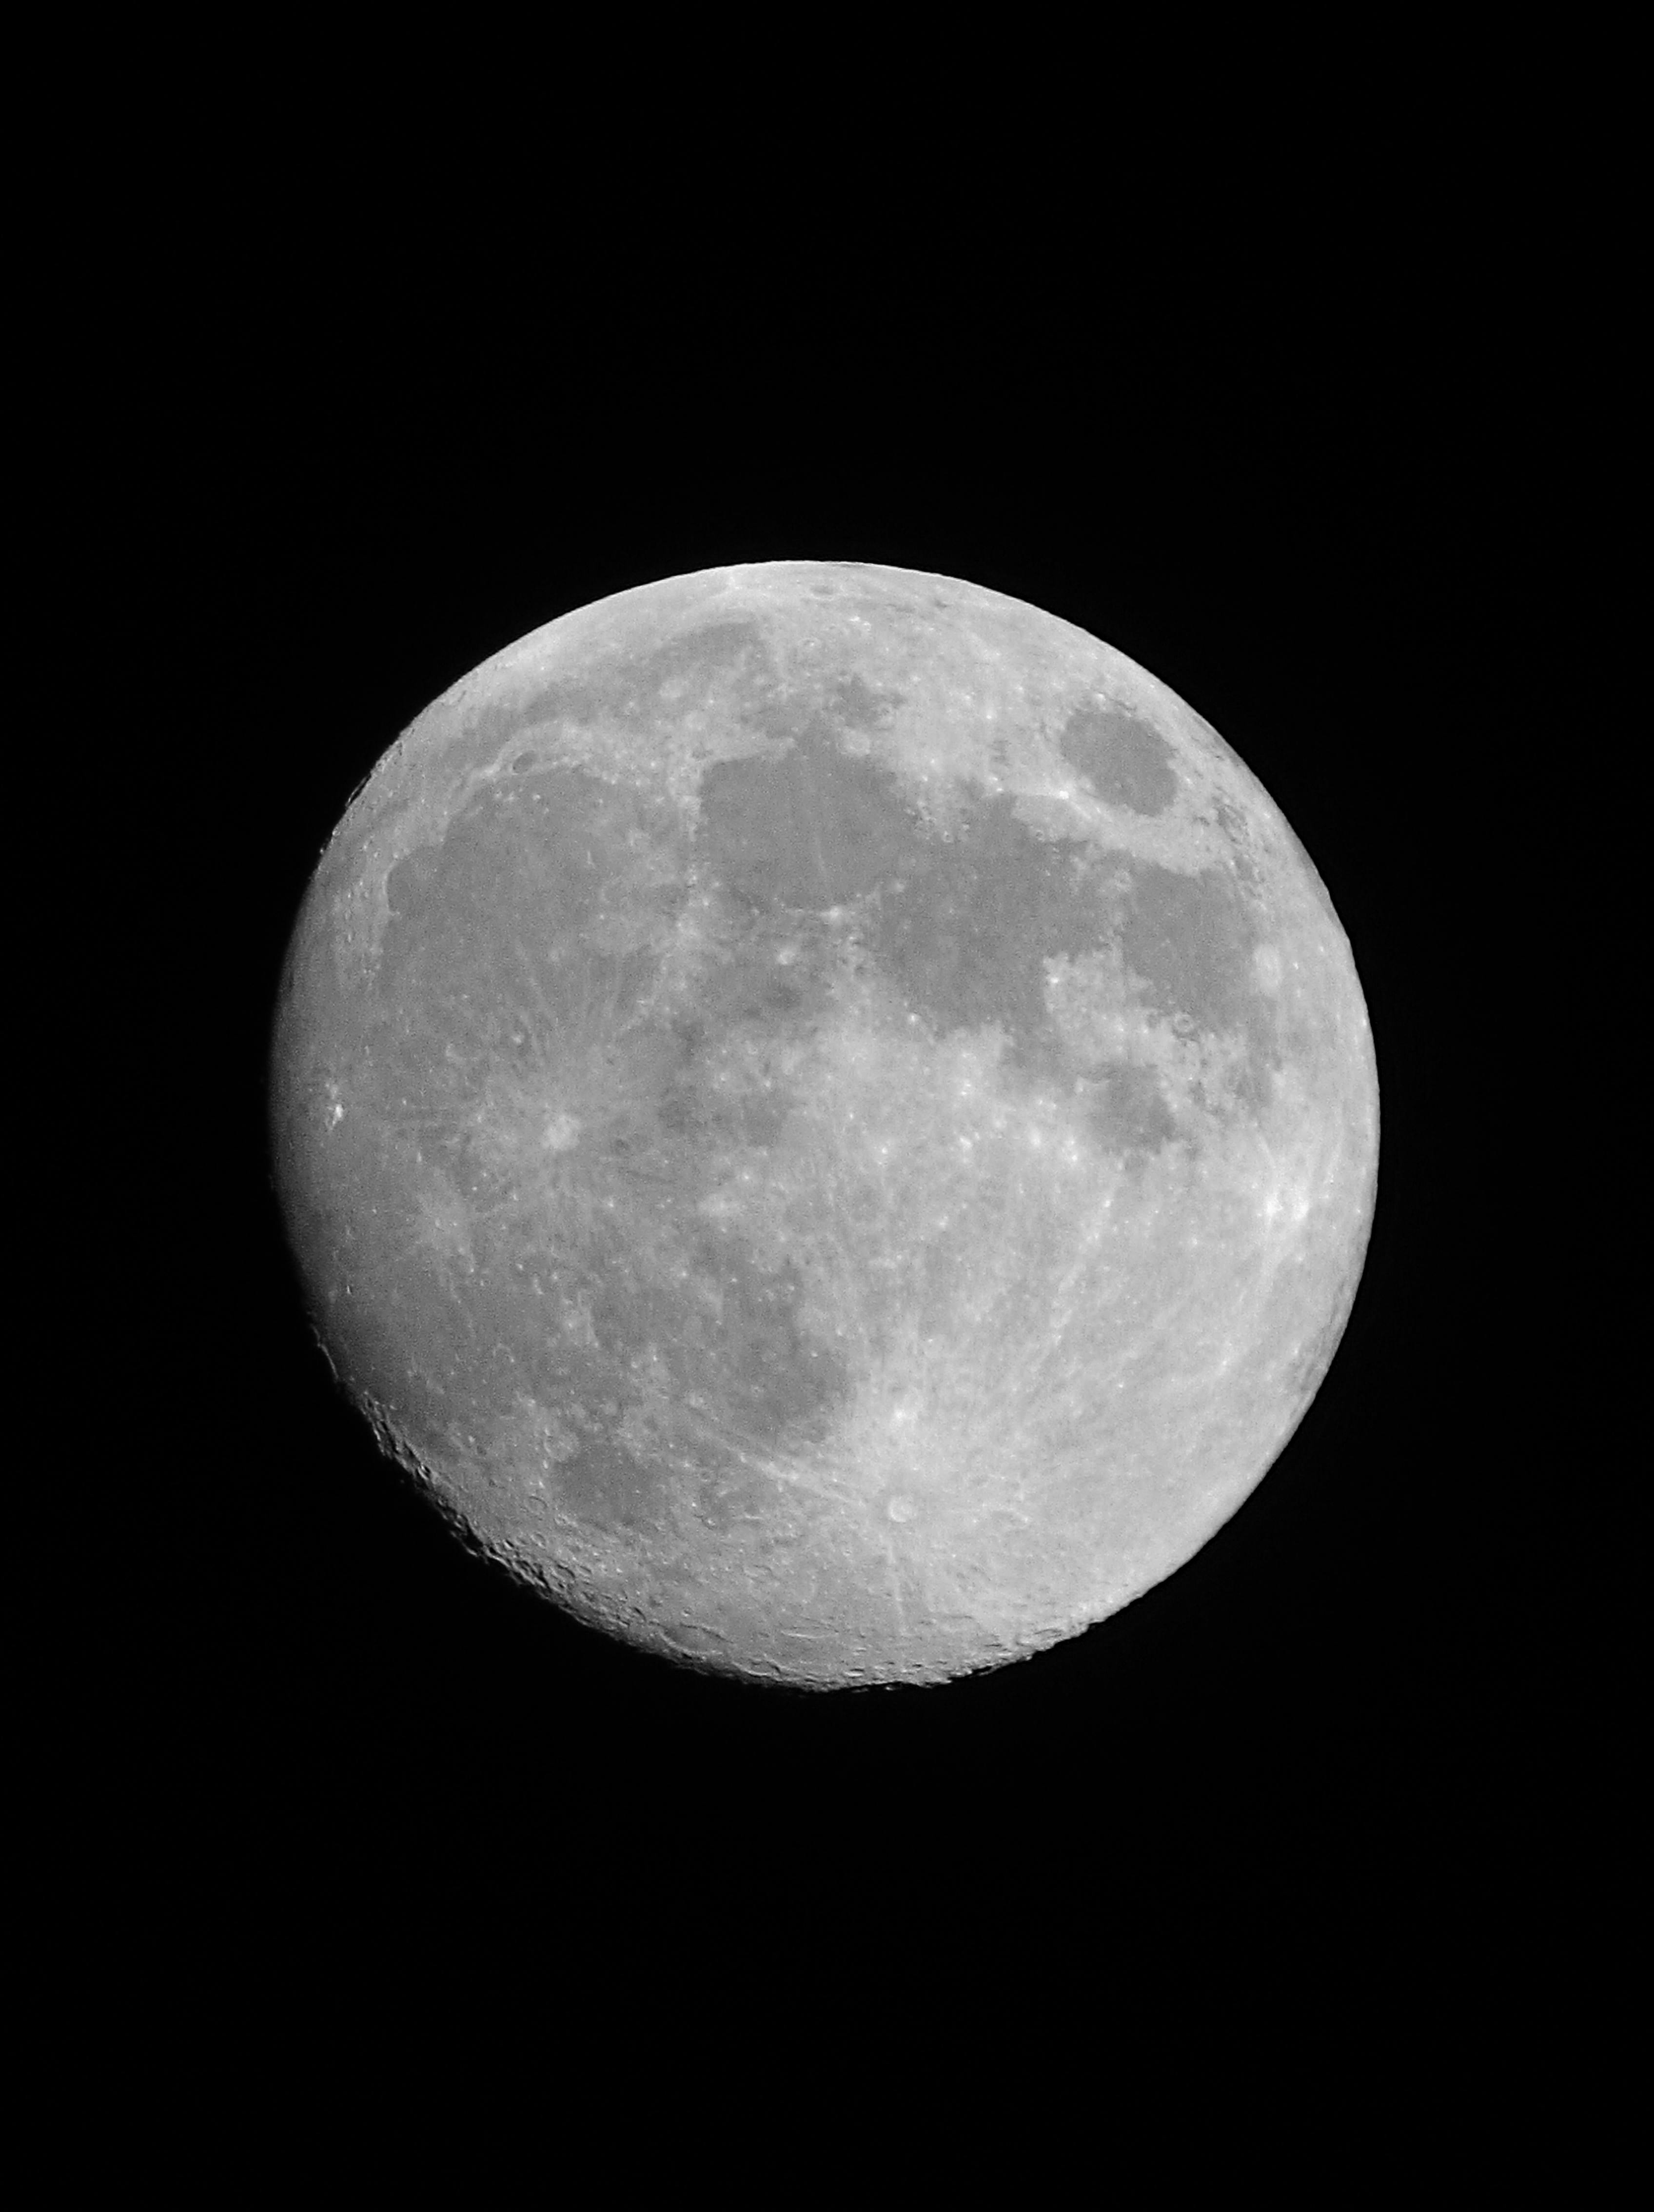 Khám phá hình ảnh miễn phí, mặt trăng tròn trên nền đen, khiến bạn nhìn thấy đẹp đến kinh ngạc! Hình này sẽ mang lại cho bạn một cảm giác êm ái và mơ mộng khi nhìn thấy mặt trăng tỏa sáng giữa trời đêm đen tối.